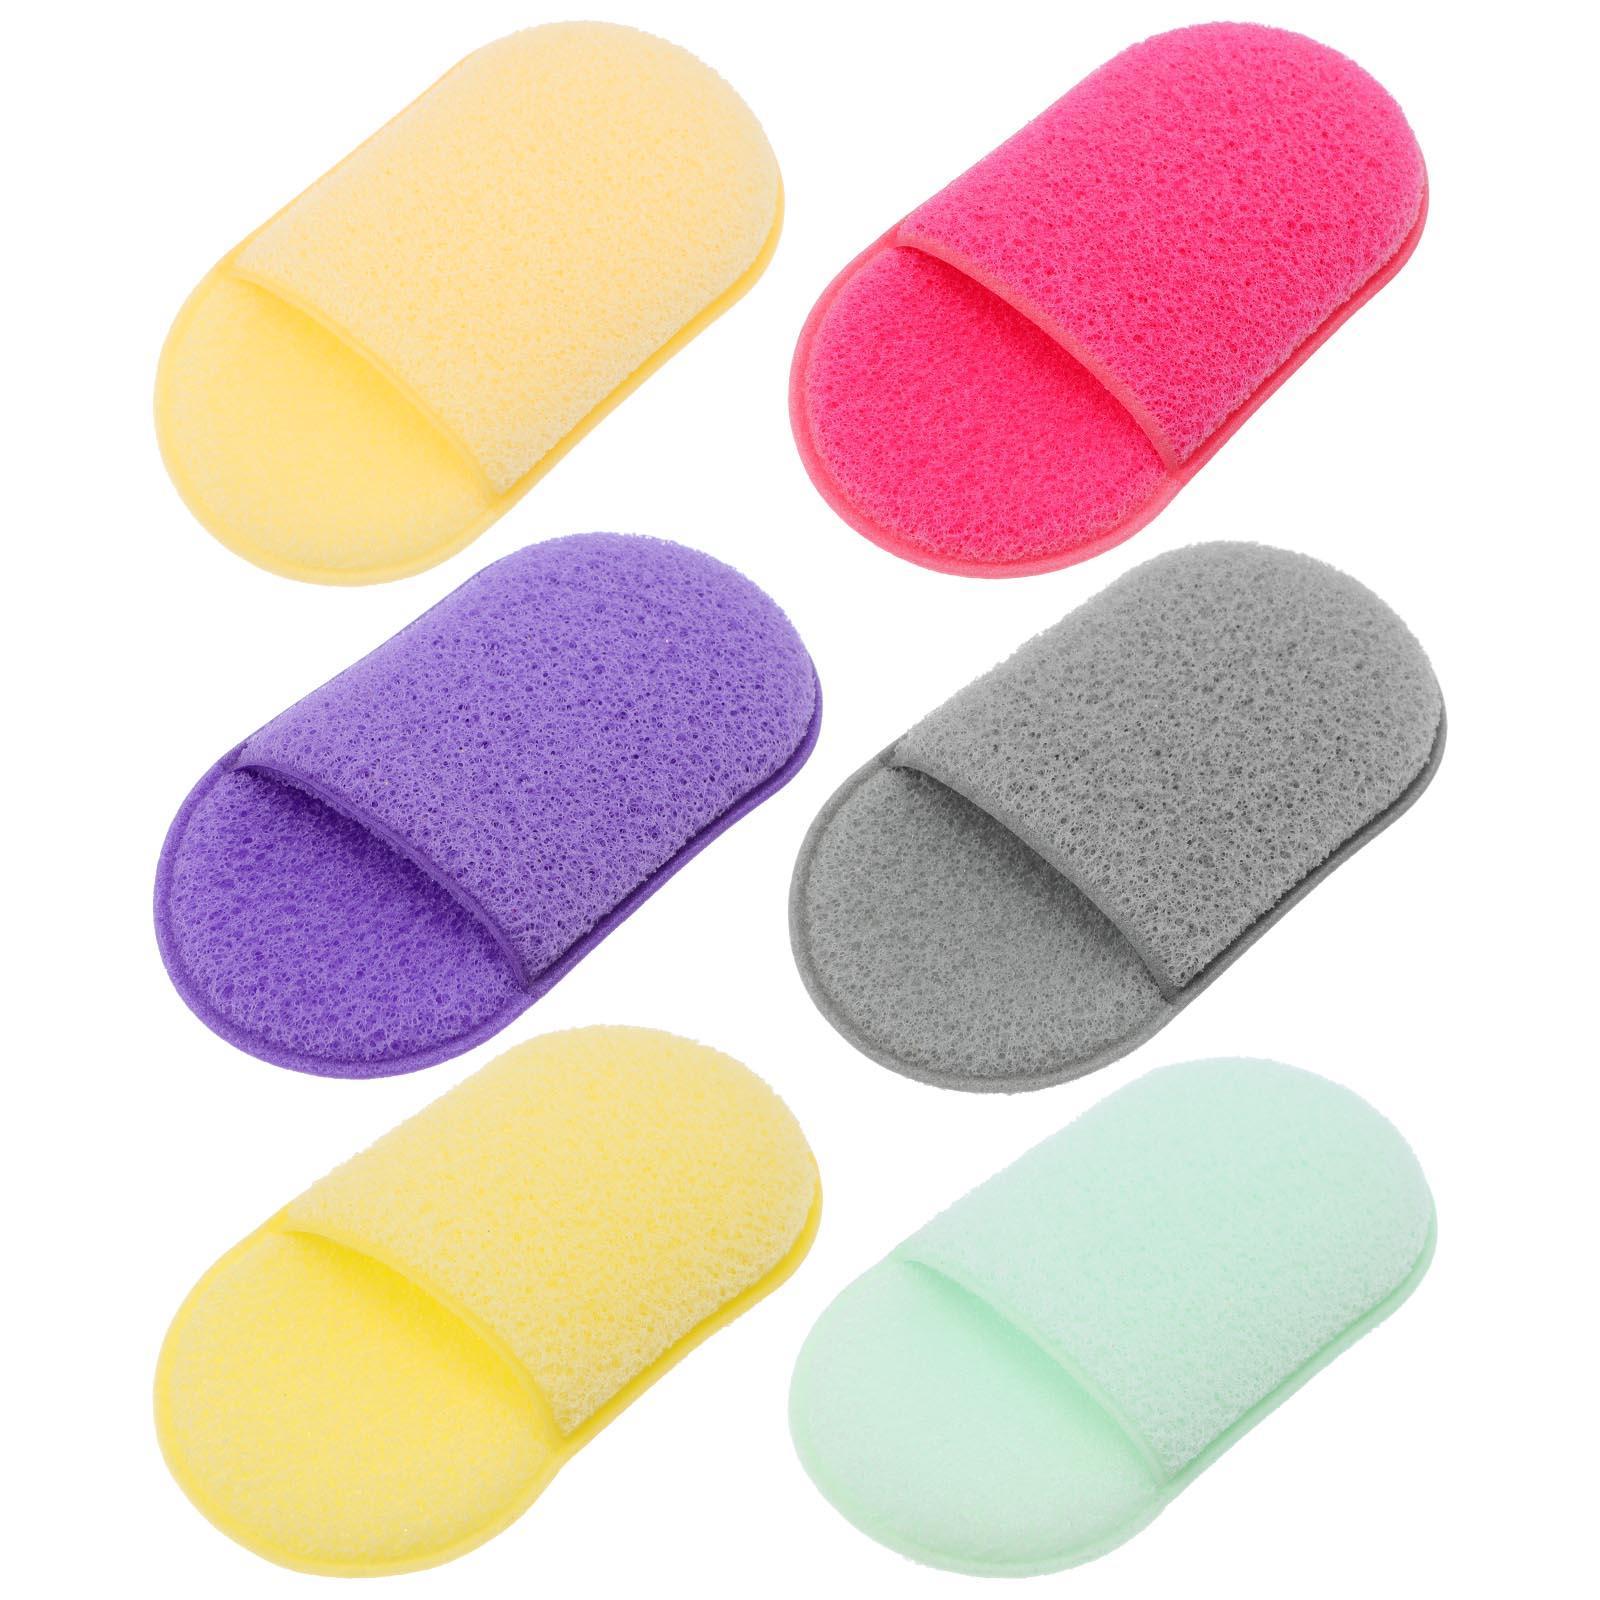 6 Pcs Foundation Sponge Exfoliating Bath Gloves Slipper Type Face Wash